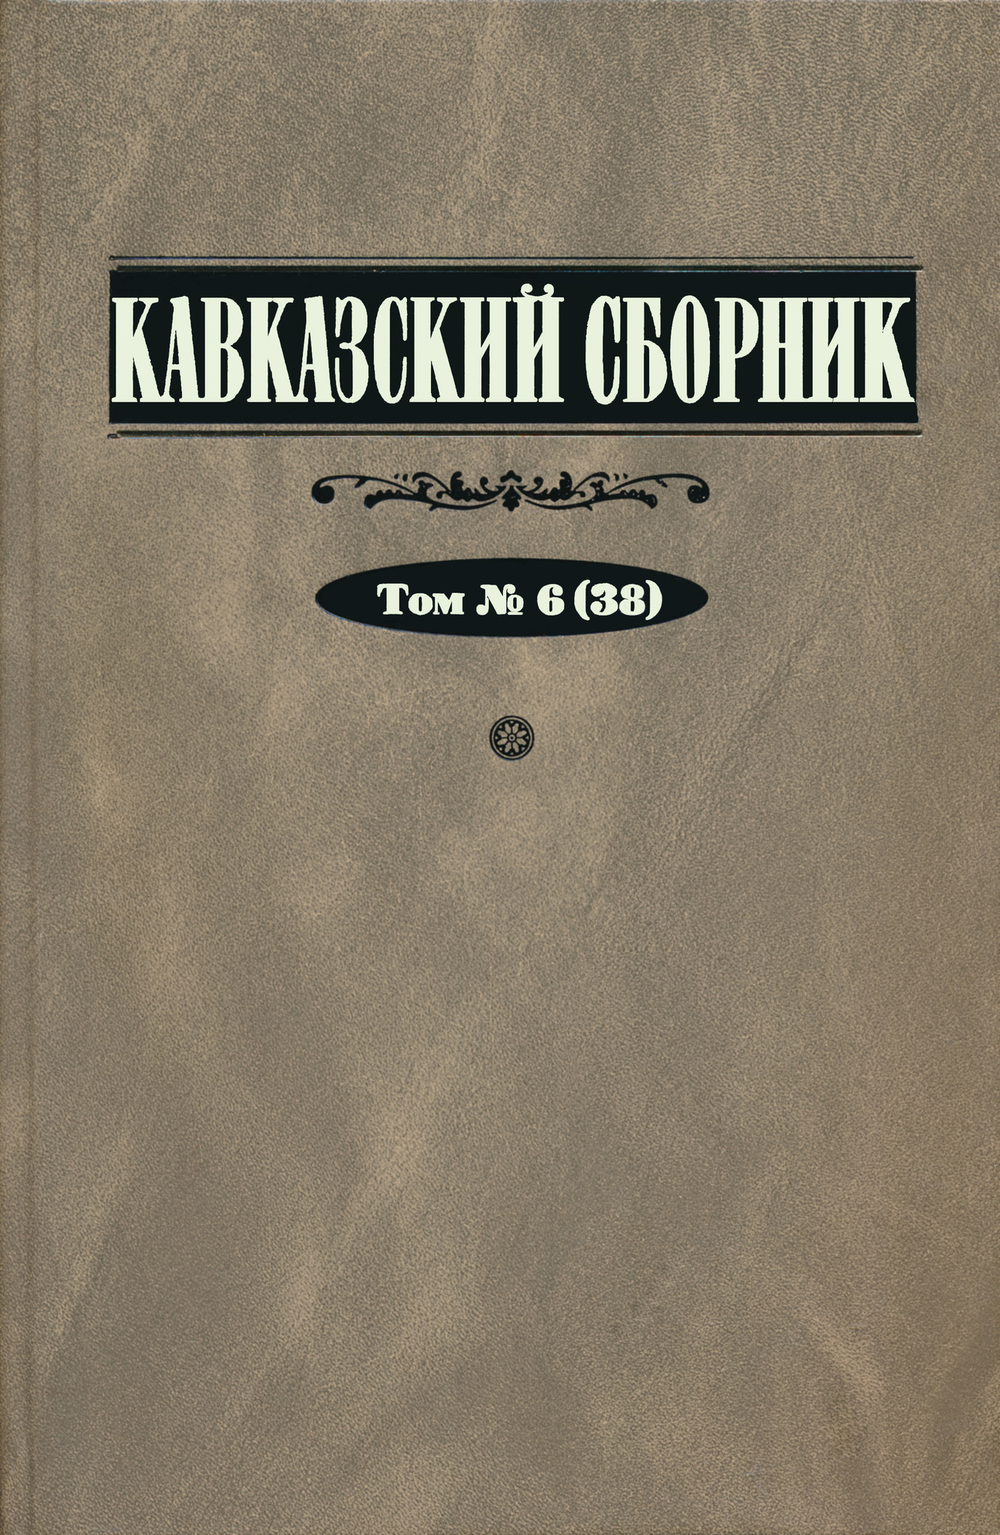 Кавказский сборник. Т. 6 (38) / Под ред. В.В.Дегоева